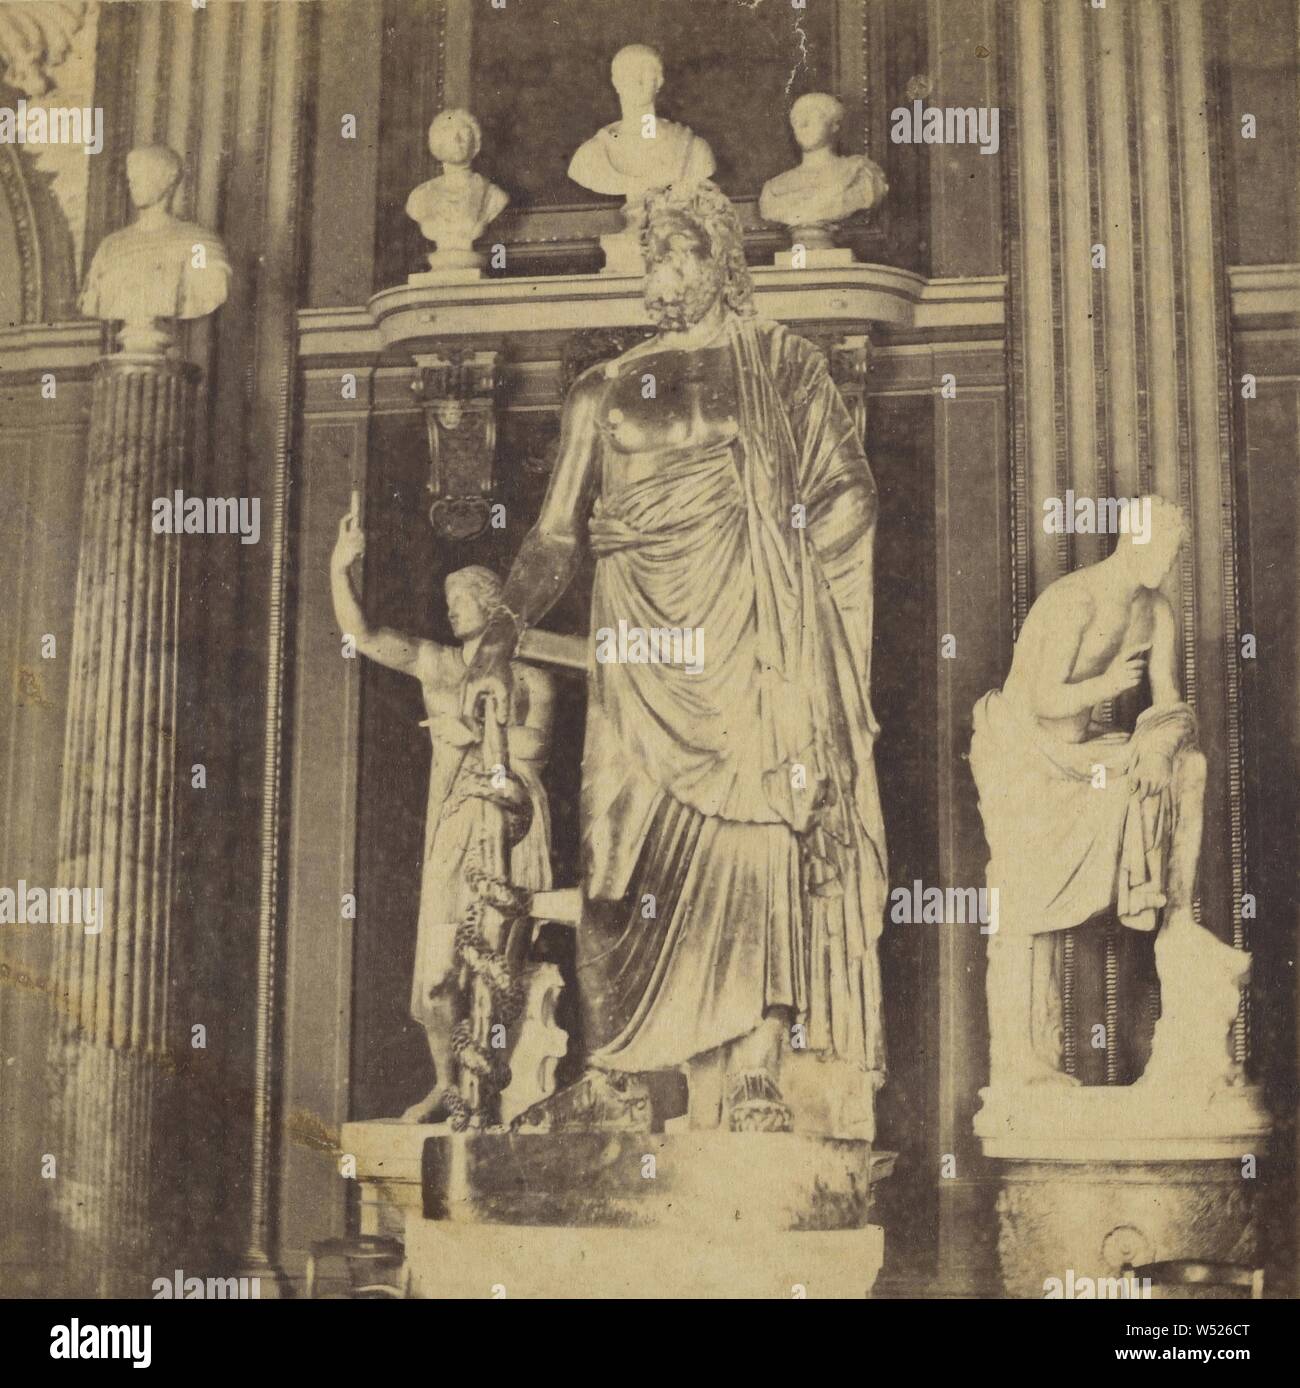 Interieur mit römischen Statuen und Büsten, F. Datri (Italienisch, aktive 1860s - 1870s), 1870s, Eiklar silber Drucken Stockfoto